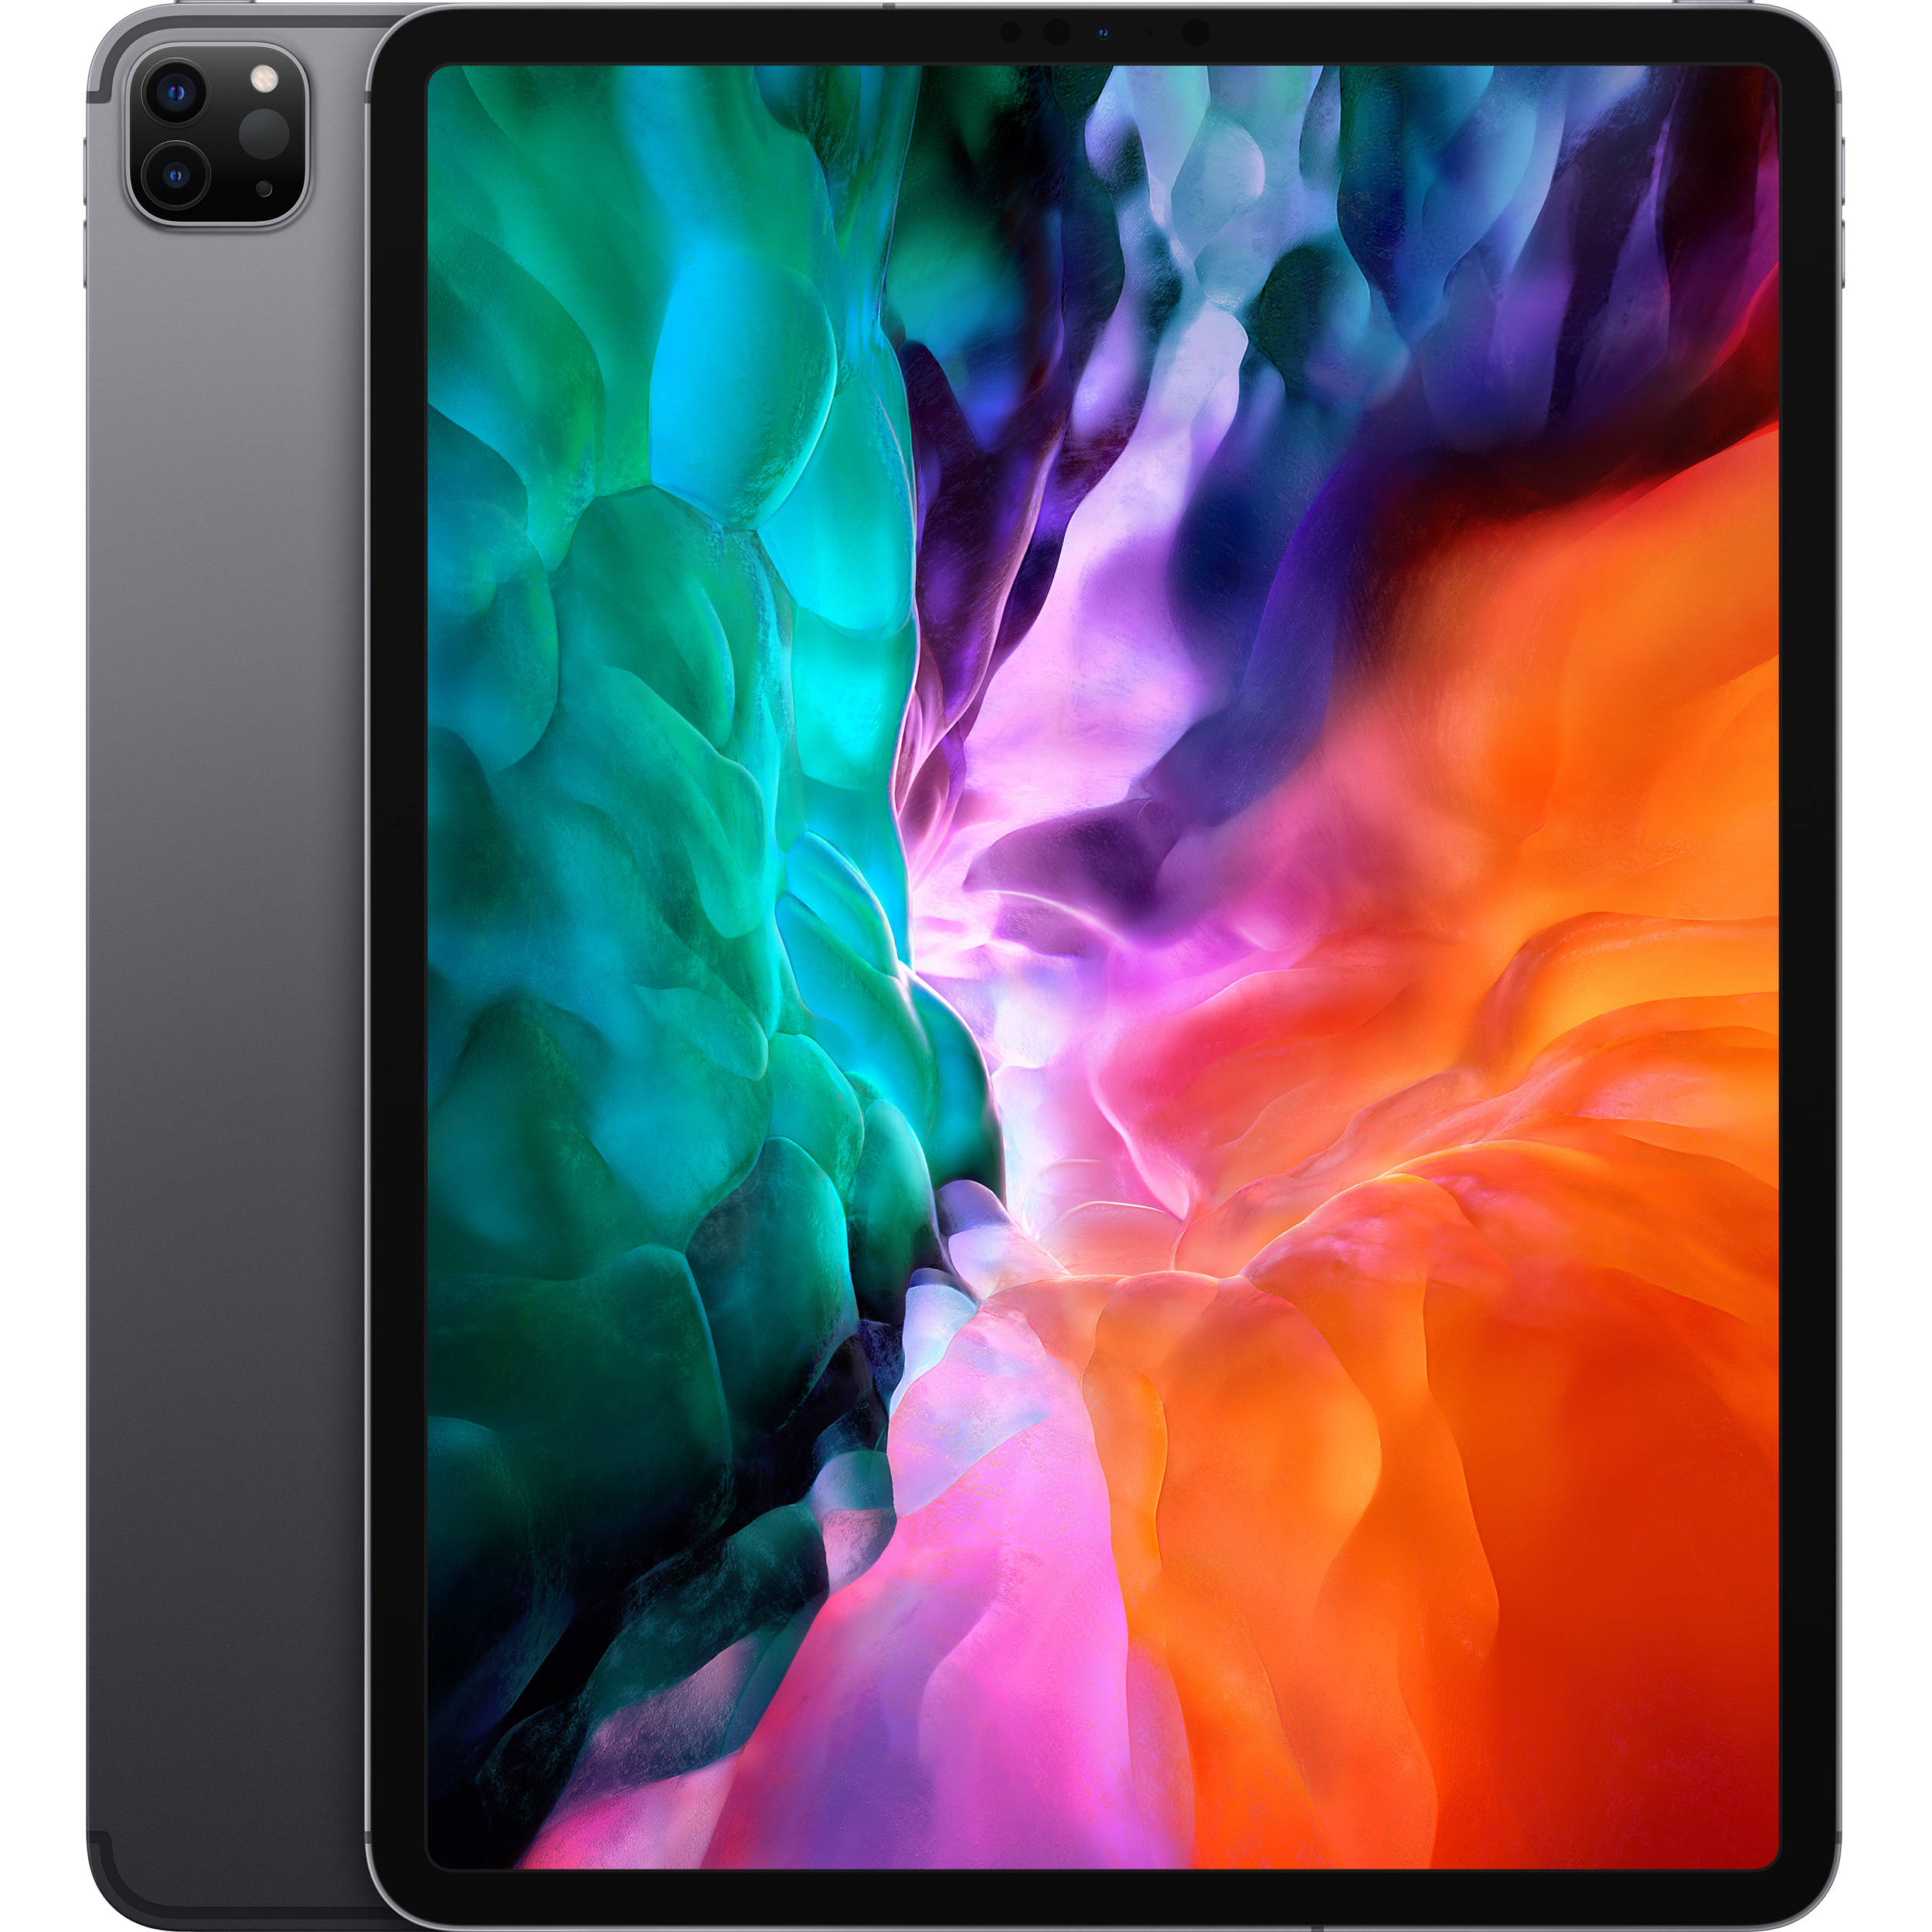 2020 Apple iPad Pro 12.9-inch, Wi-Fi + Cellular, 256GB - Space Grey - MXFX2LL/A - Refurbished Good